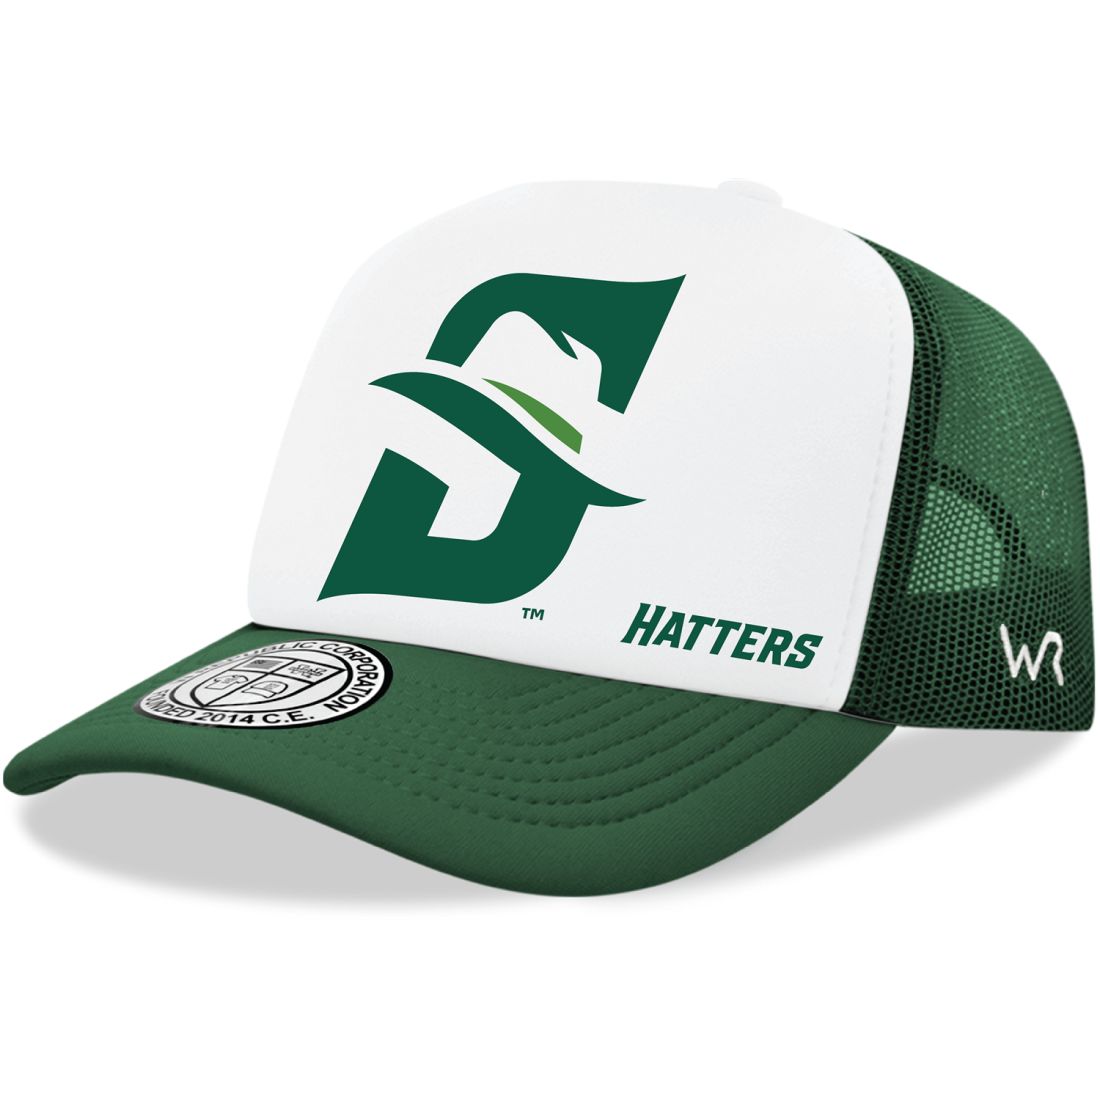 Stetson University Hatters Jumbo Foam Trucker Hats